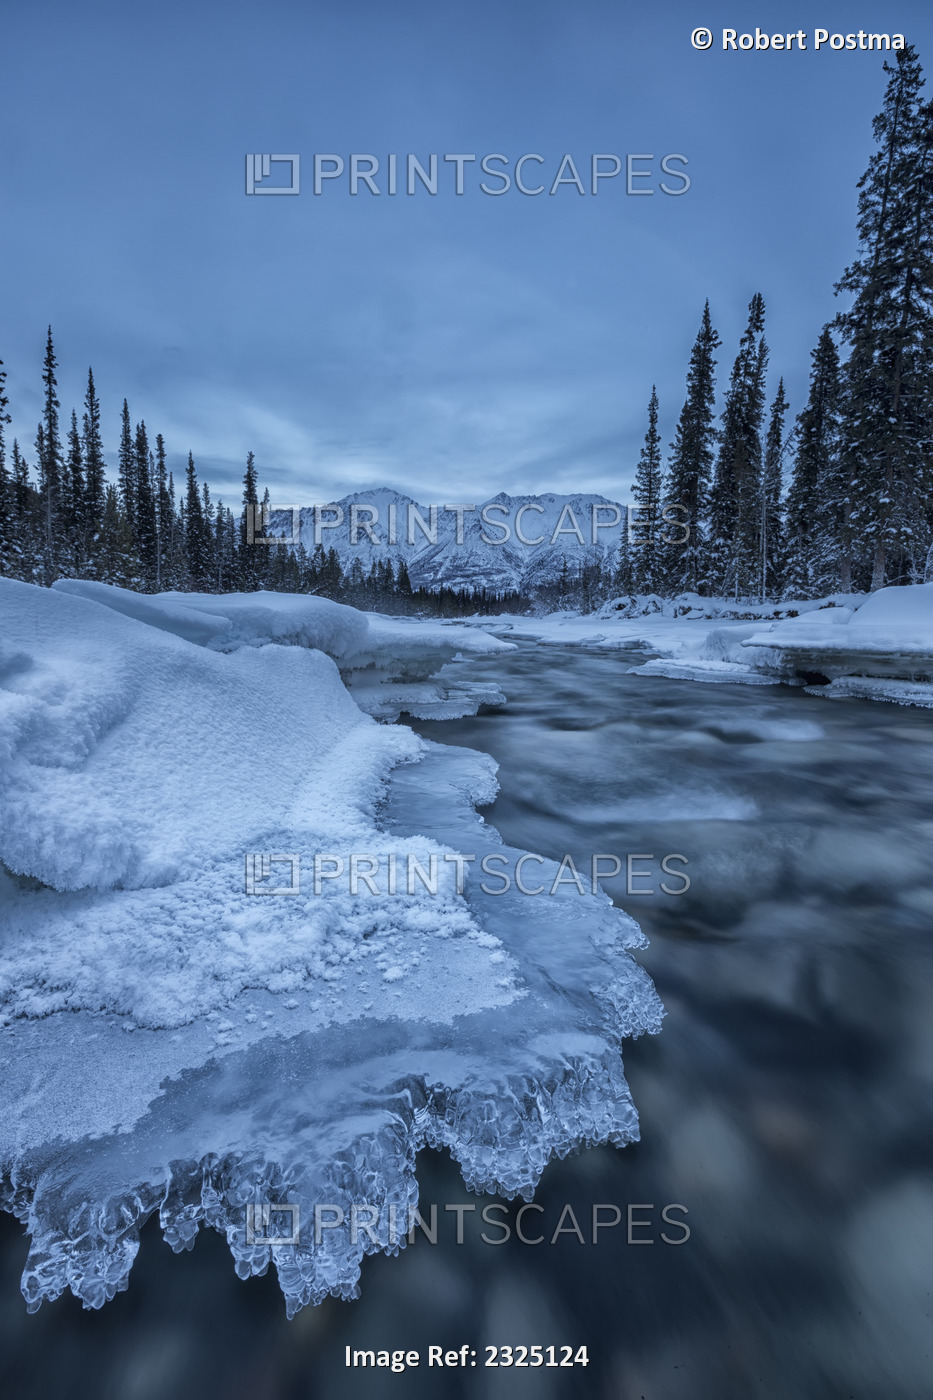 Ice Forms On The Wheaton River Near Whitehorse; Yukon Canada